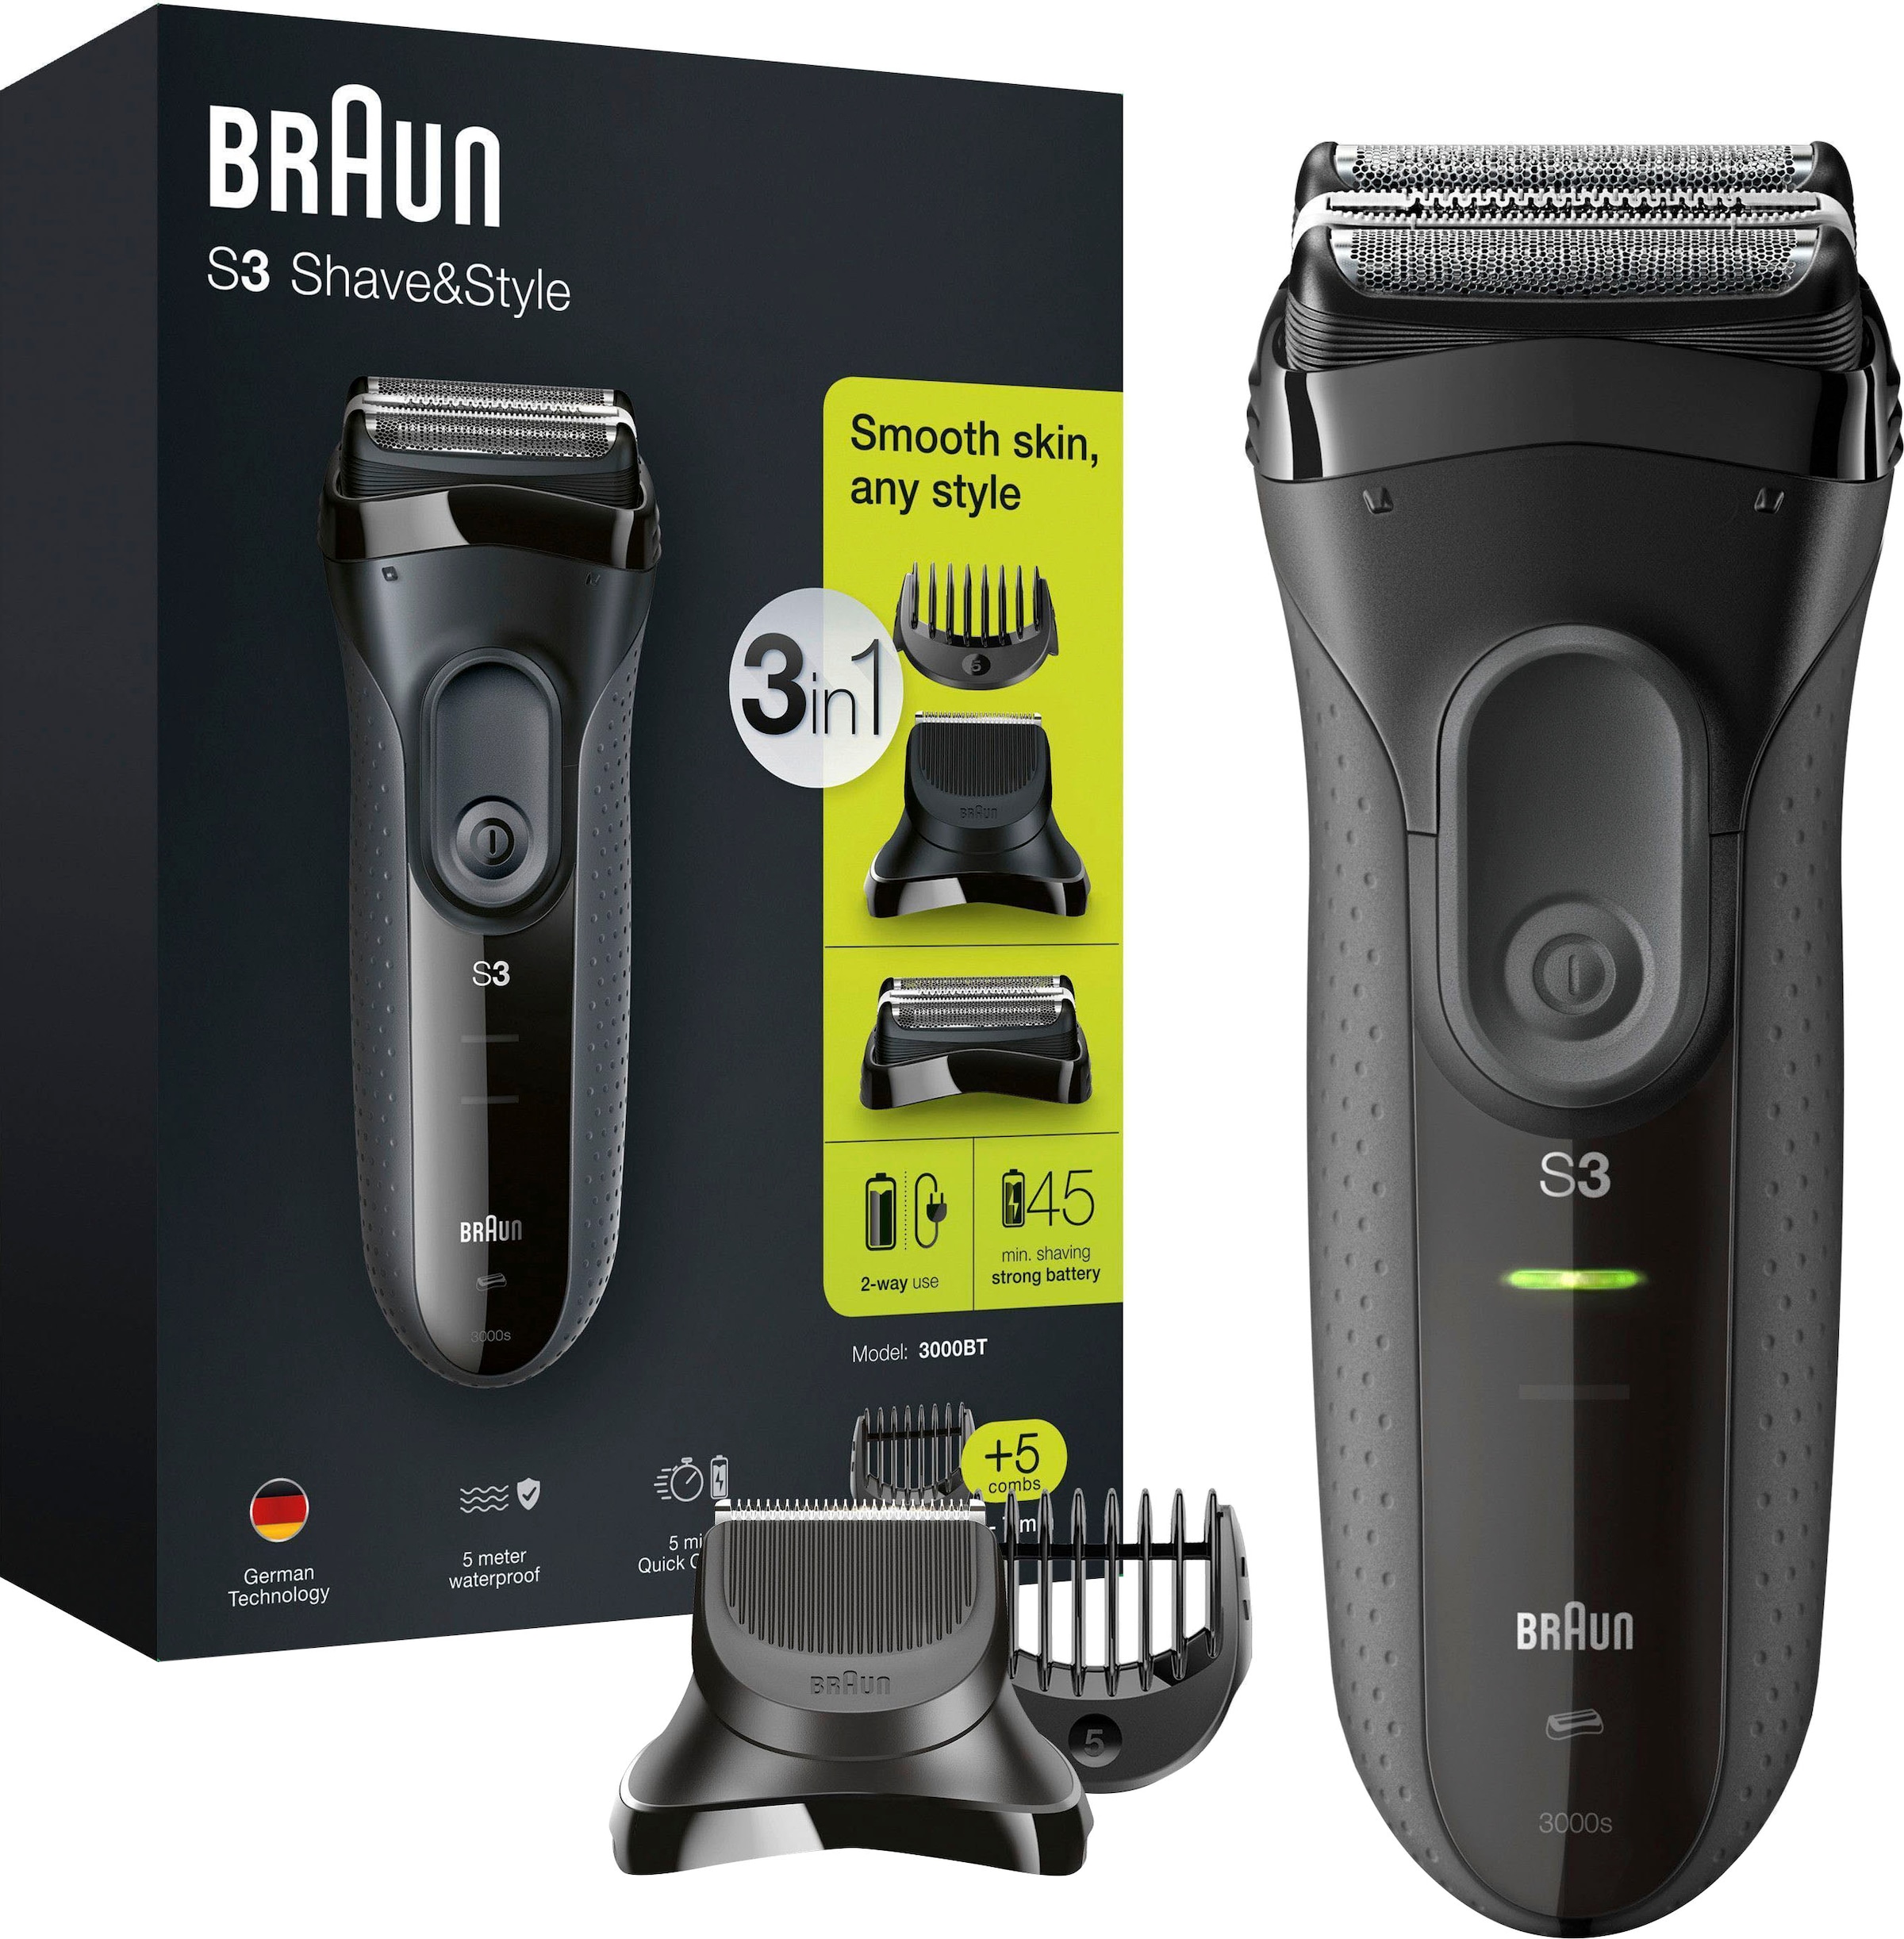 ♕ Braun Elektrorasierer Wet&Dry »Series 3 3000BT«, Shave&Style versandkostenfrei auf